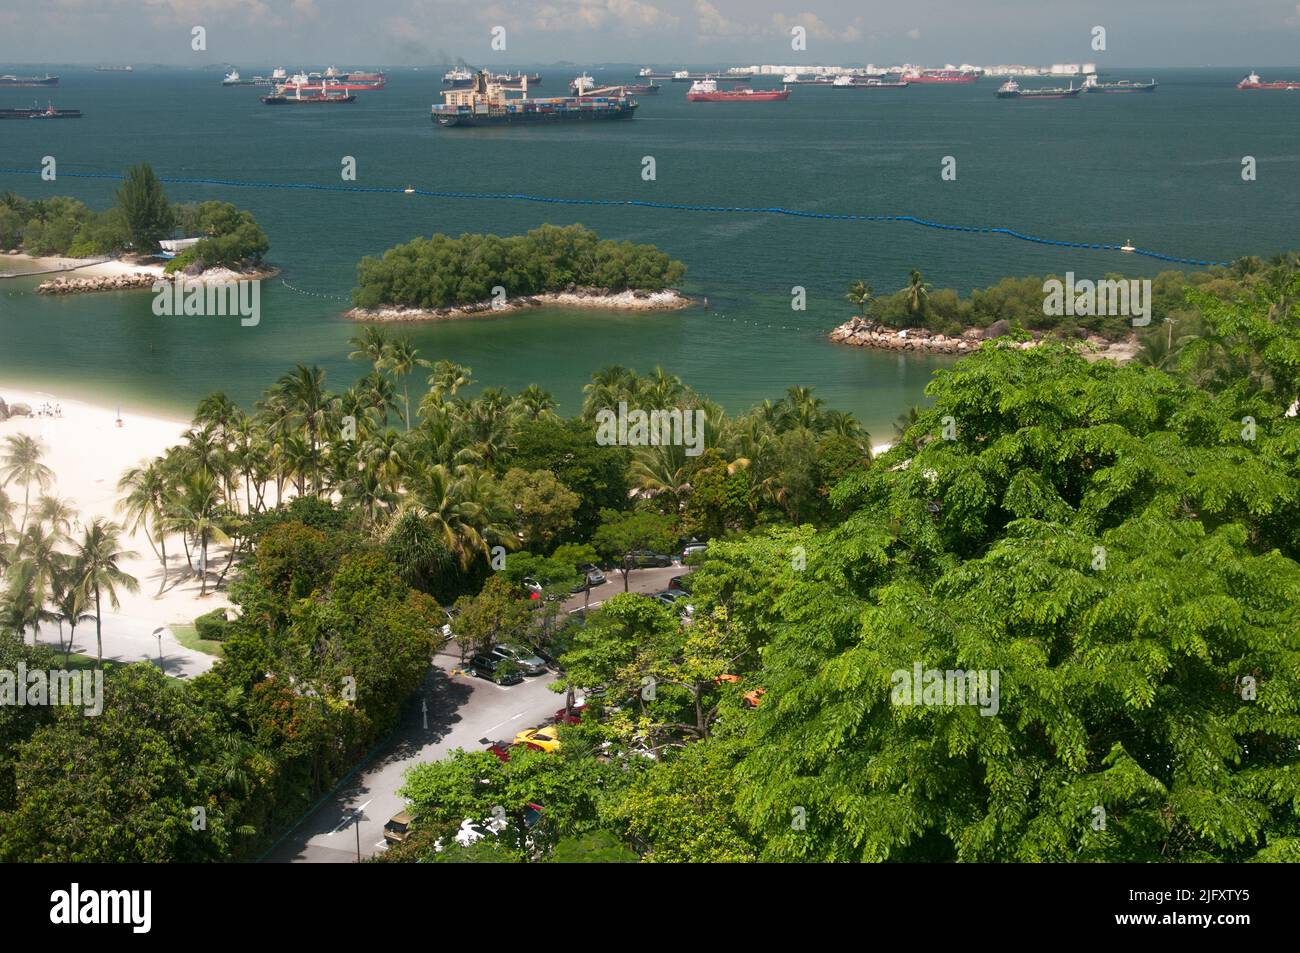 Die Strände der Insel Sentosa liegen oberhalb des Siloso Beach, Singapur, neben einem geschäftigen Schifffahrtskanal Stockfoto